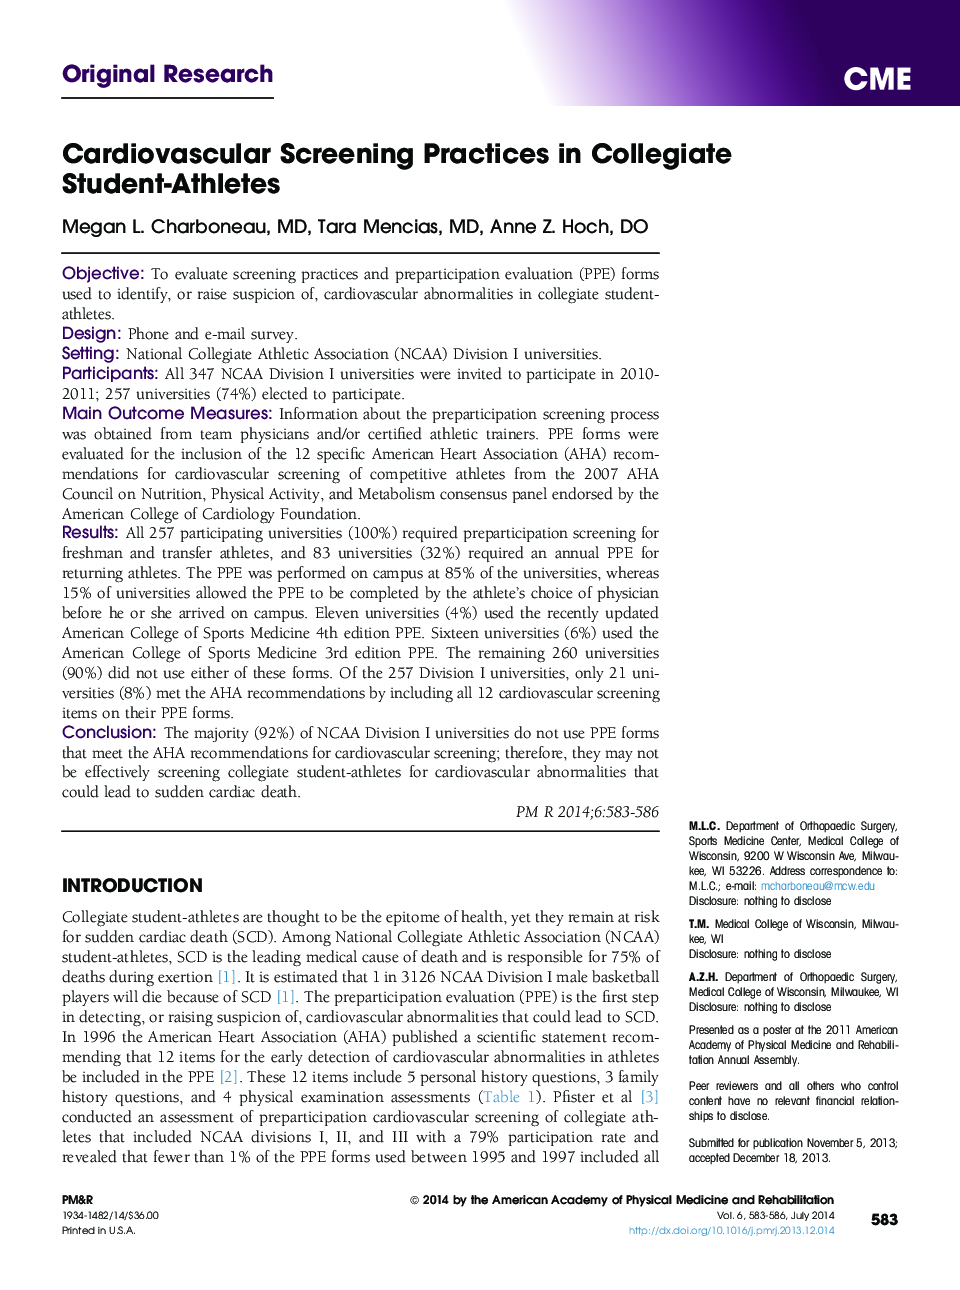 تمرینات غربالگری قلبی عروقی در دانشجویان ورزشکار دانشگاهی 